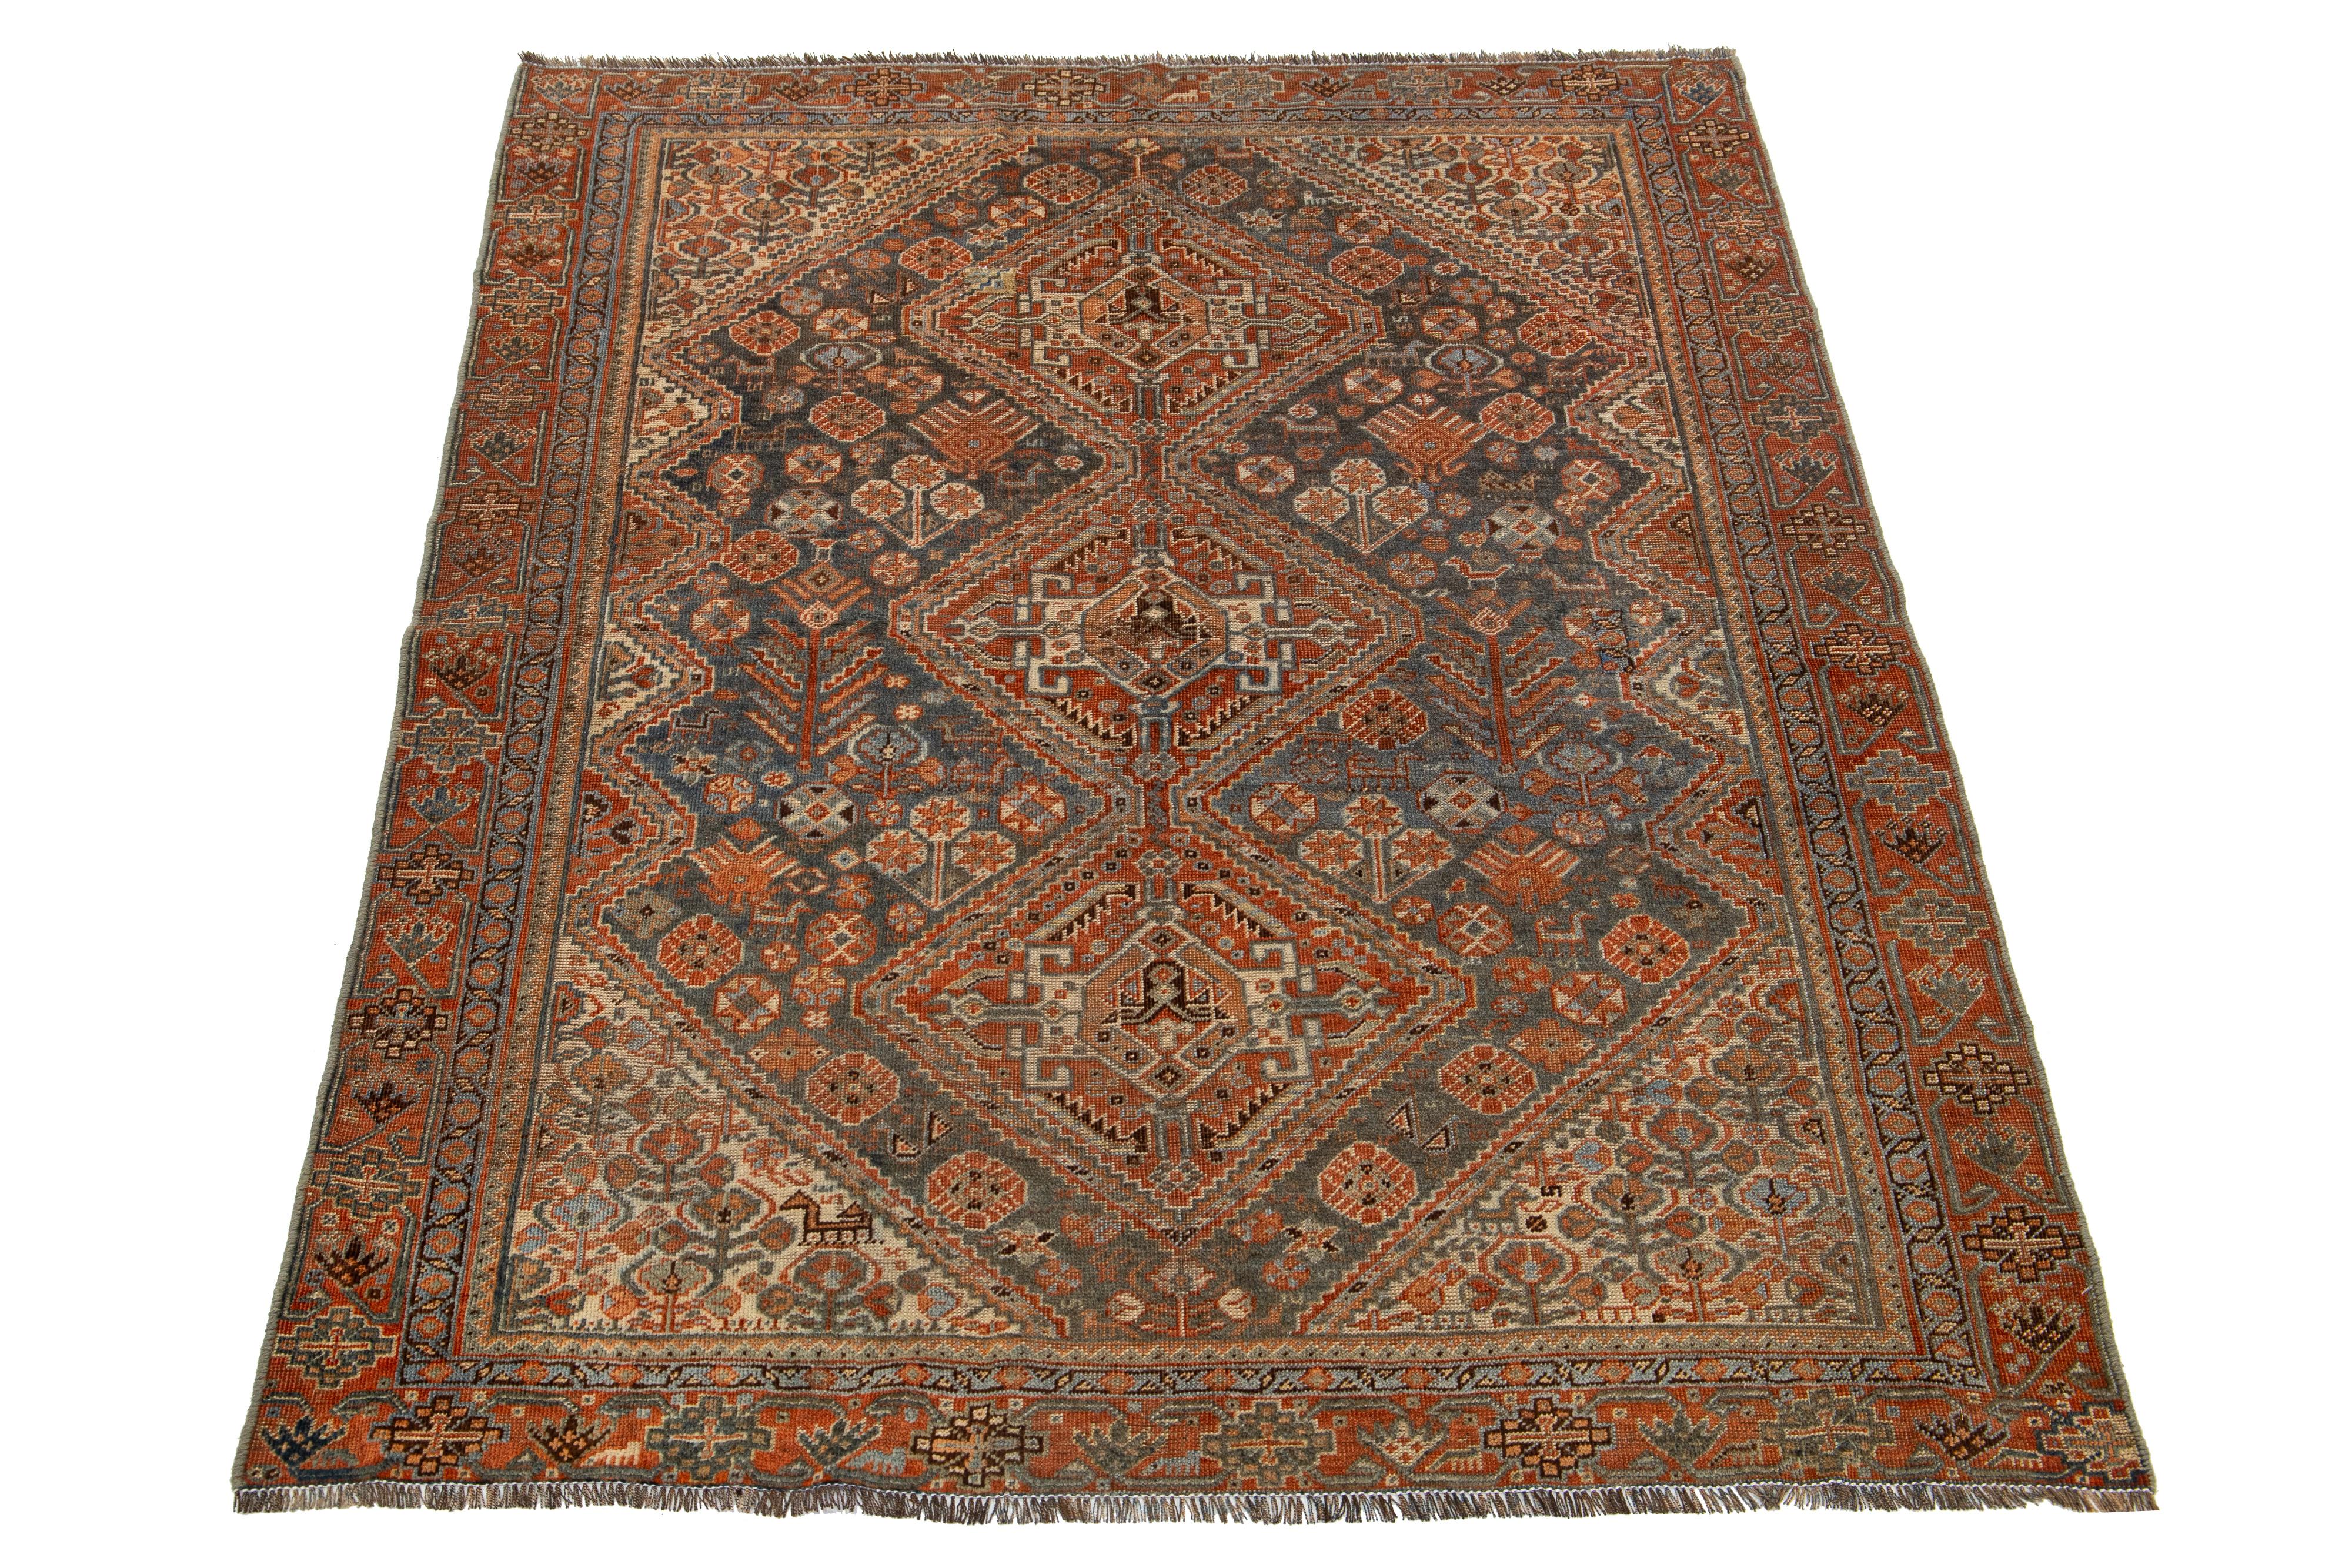 Dieser Teppich aus persischer Shiraz-Wolle zeigt ein Stammesmuster mit beeindruckenden Akzenten in Beige und Rost auf blauem Hintergrund.

Dieser Teppich misst 4'4